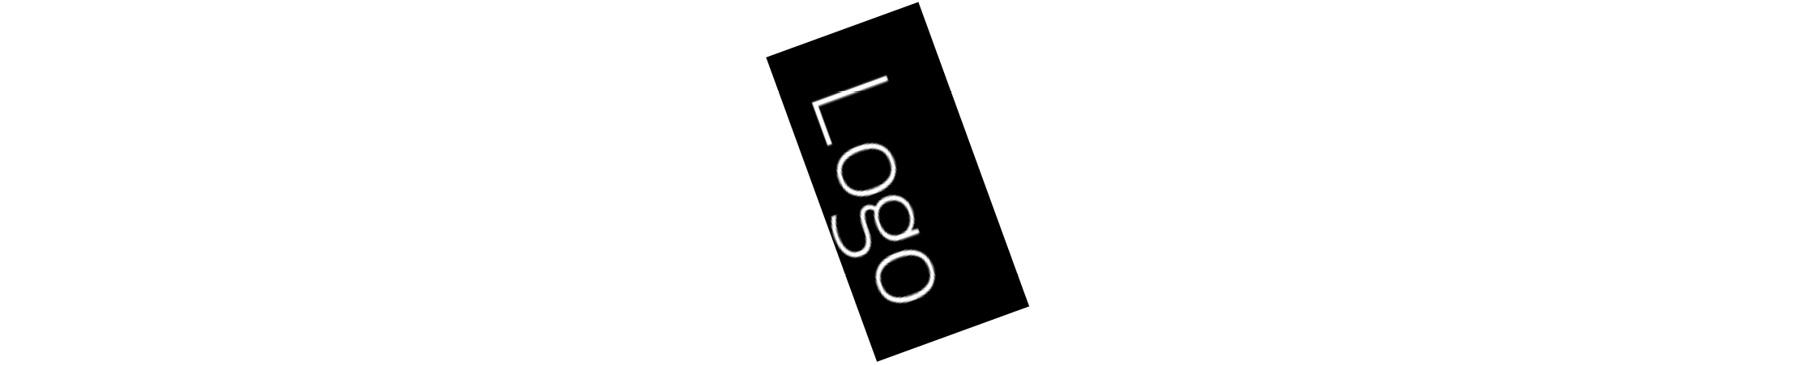 Figure 10.13: Rotated logo file
